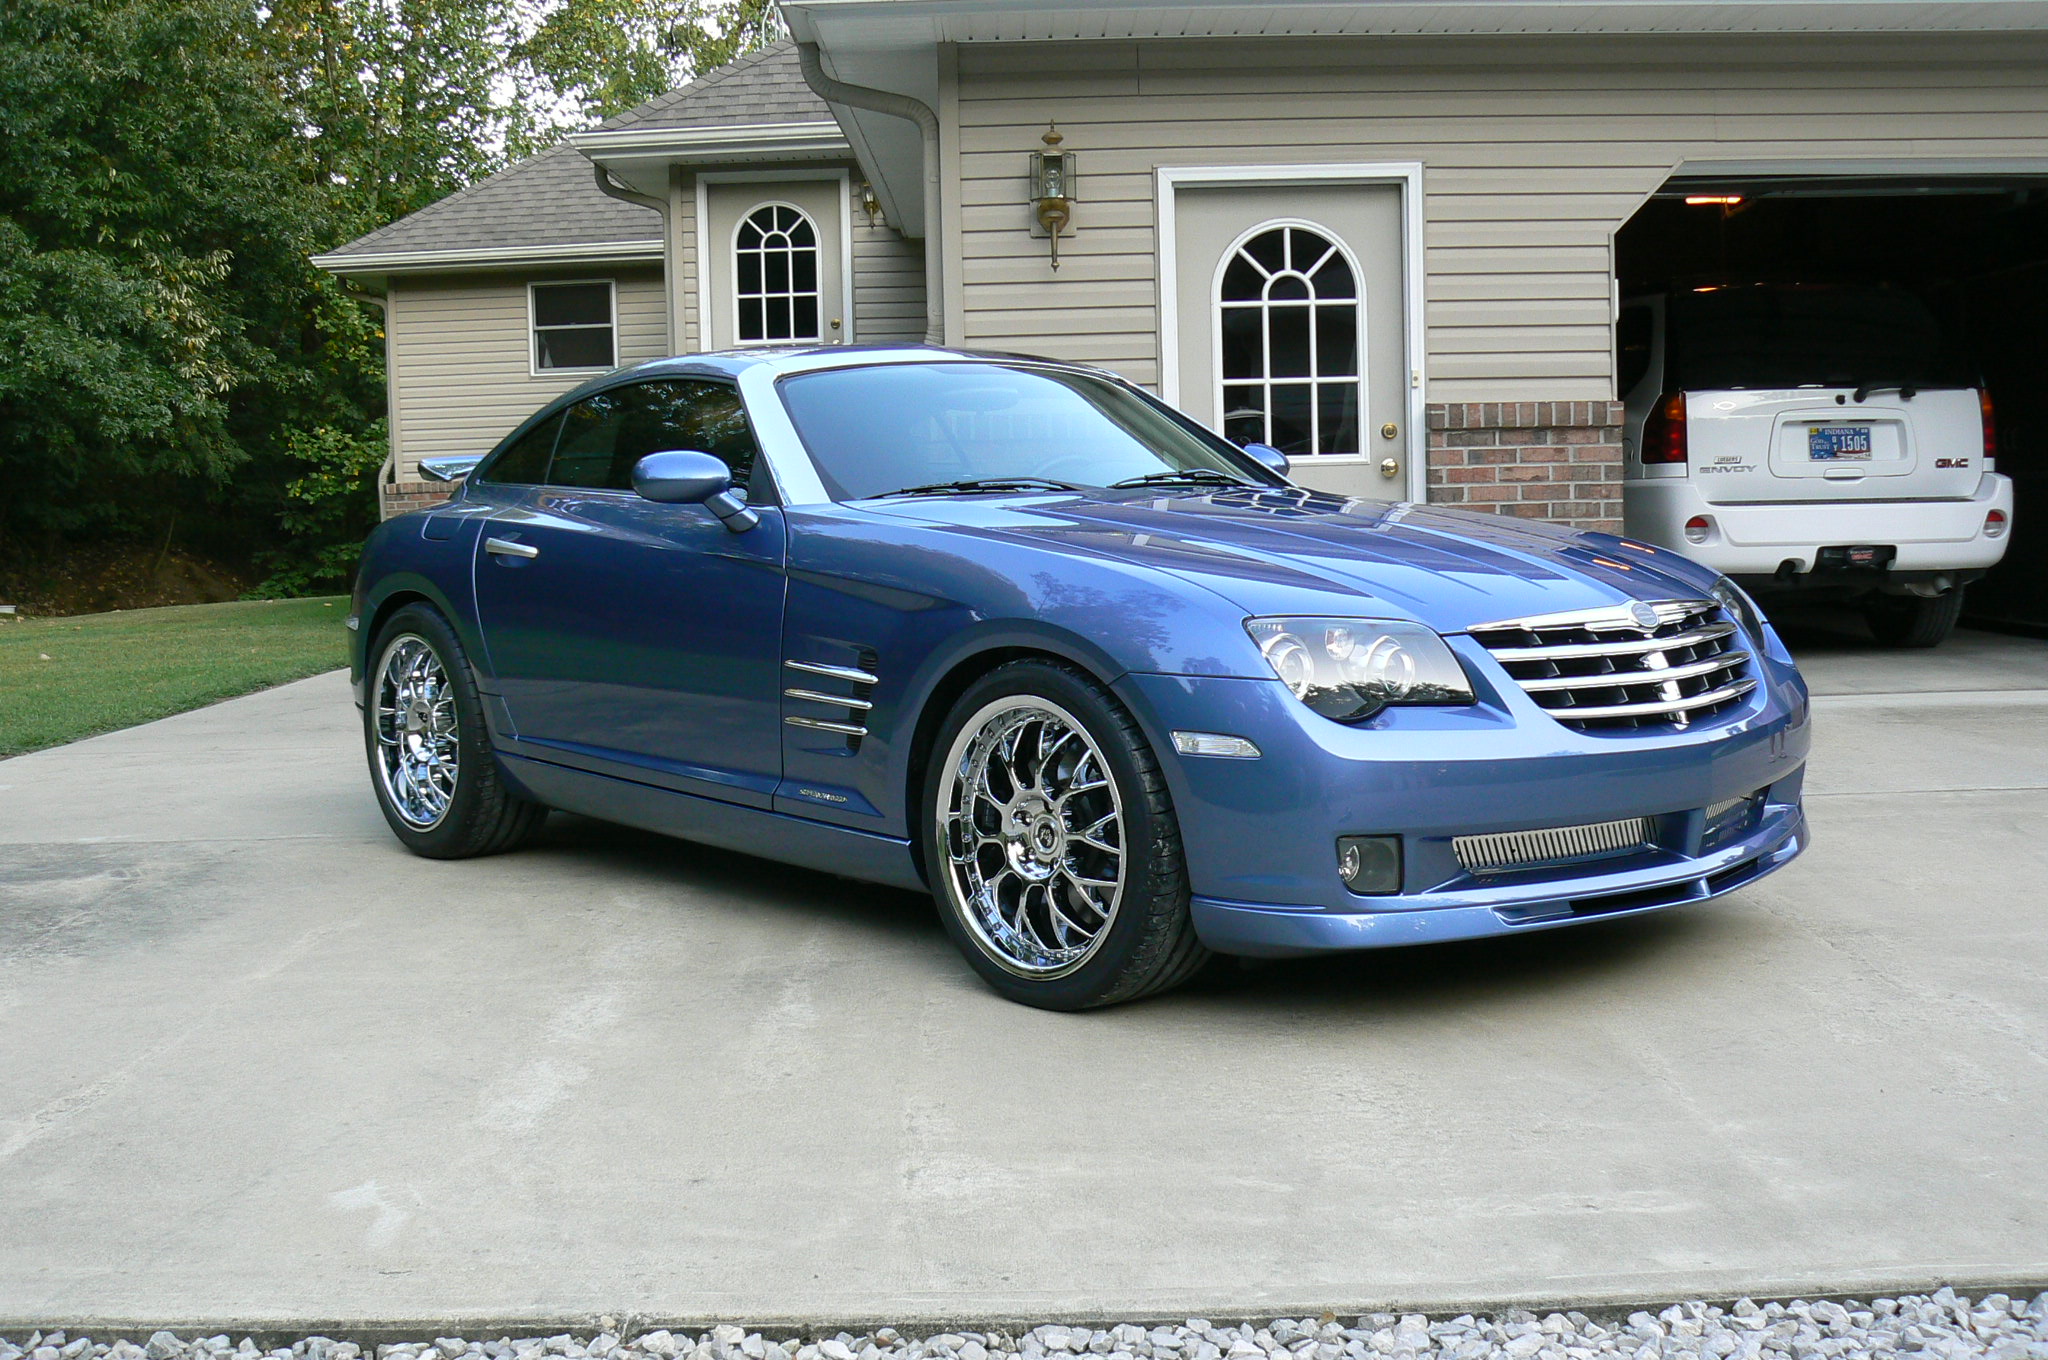  2005 Chrysler Crossfire SRT 6   RENNtech